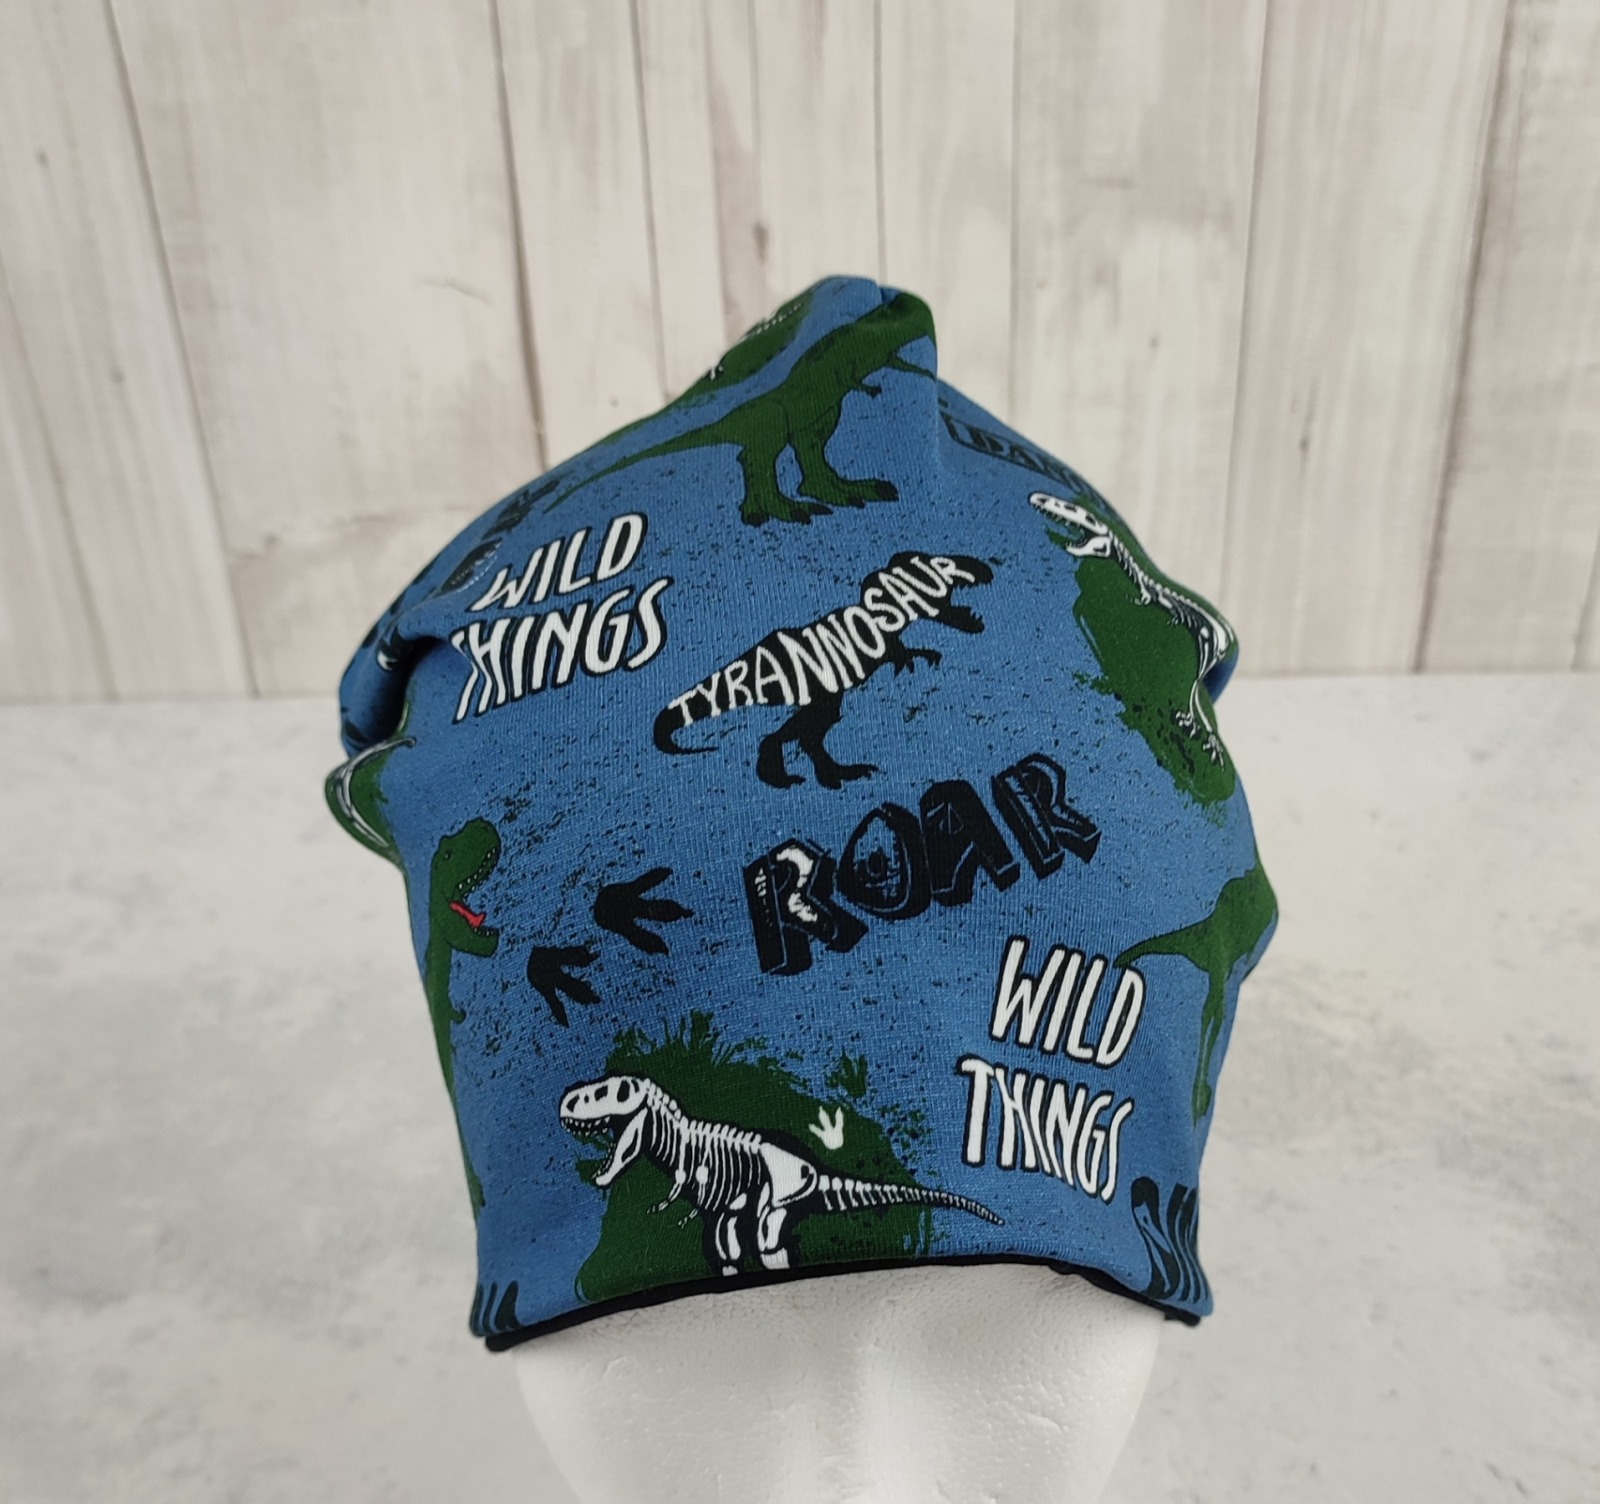 Beanie Dinosaurier - coole Mütze für Kinder mit Dinos auf Jersey in jeansblau Größe ca 48 - 54 cm Kopfumfang 3